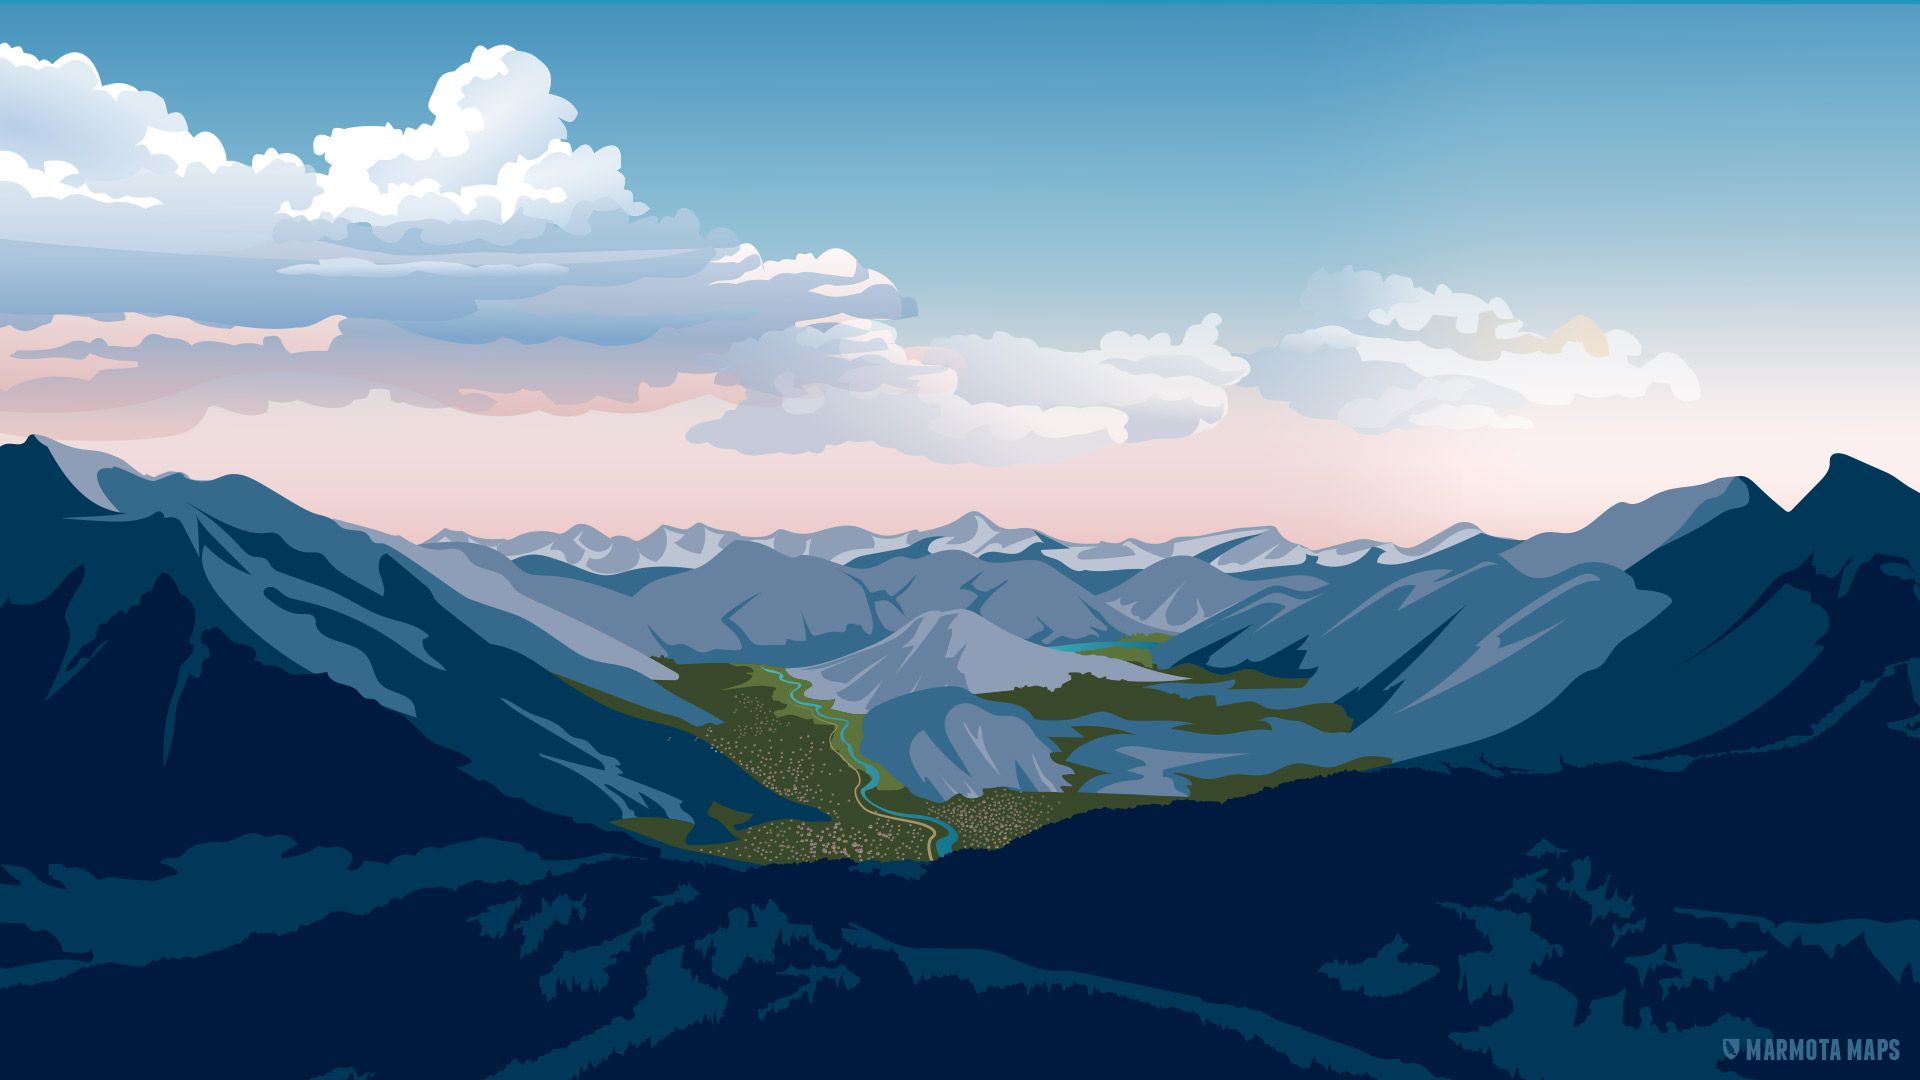  Alpen Hintergrundbild 1920x1080. Wallpaper fürs Smartphone